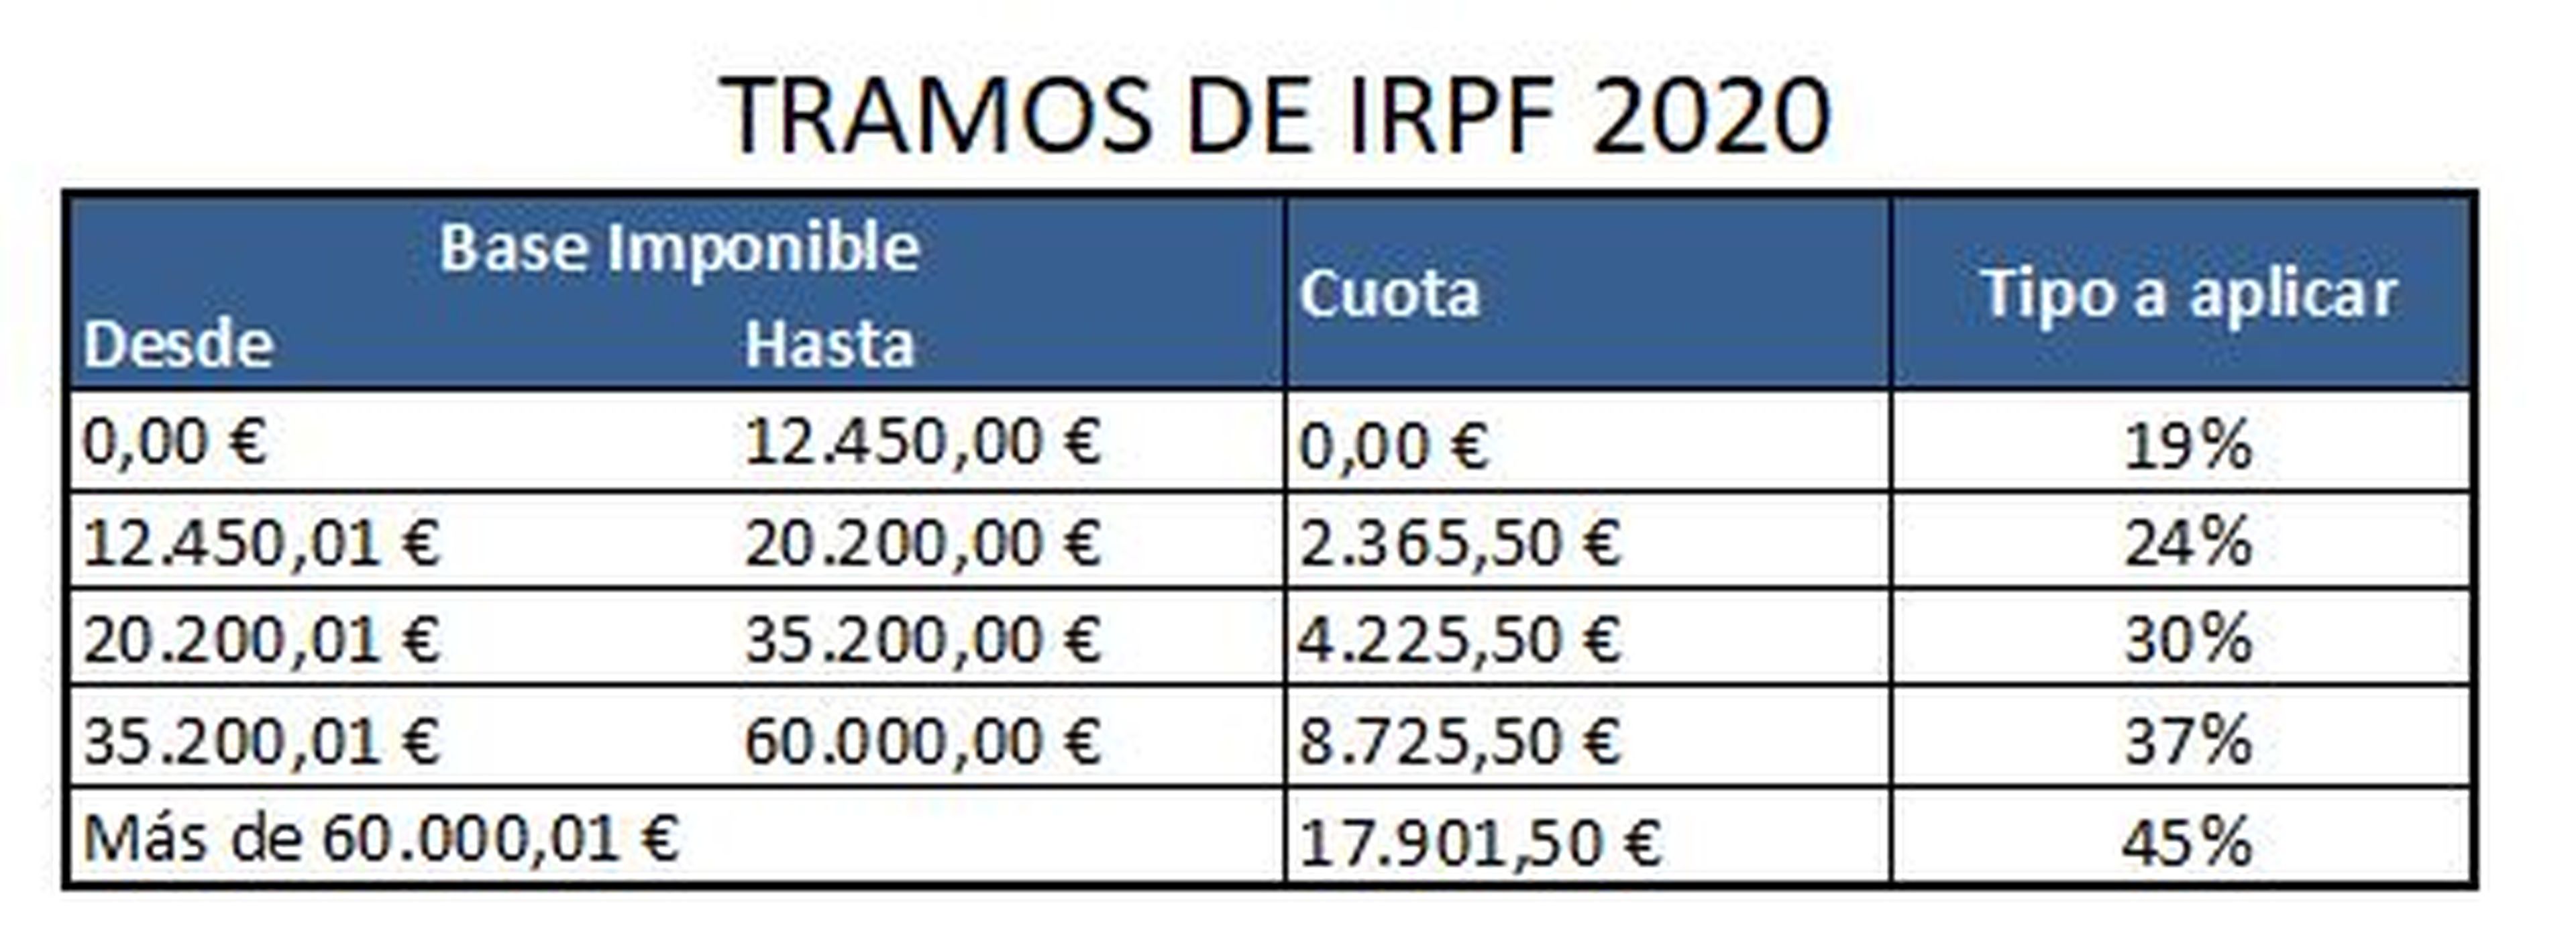 Tramos de IRPF 2020 para hacer la declaración de la renta